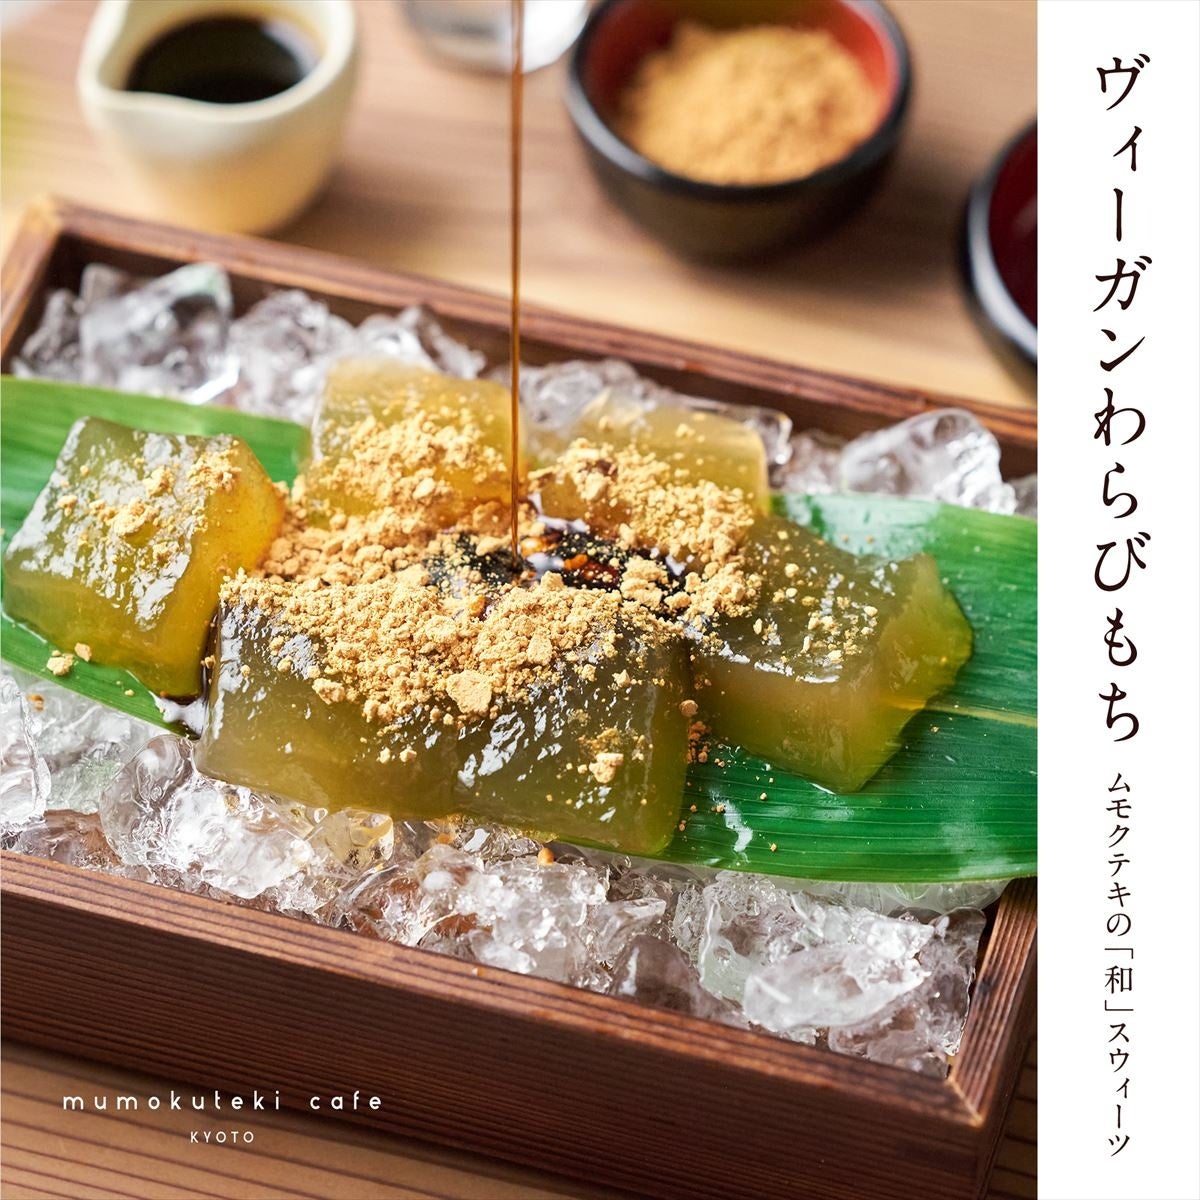 京都のヴィーガン対応カフェ「mumokuteki cafe KYOTO」が、和スイーツ「ヴィーガンわらびもち」を発売のサブ画像1